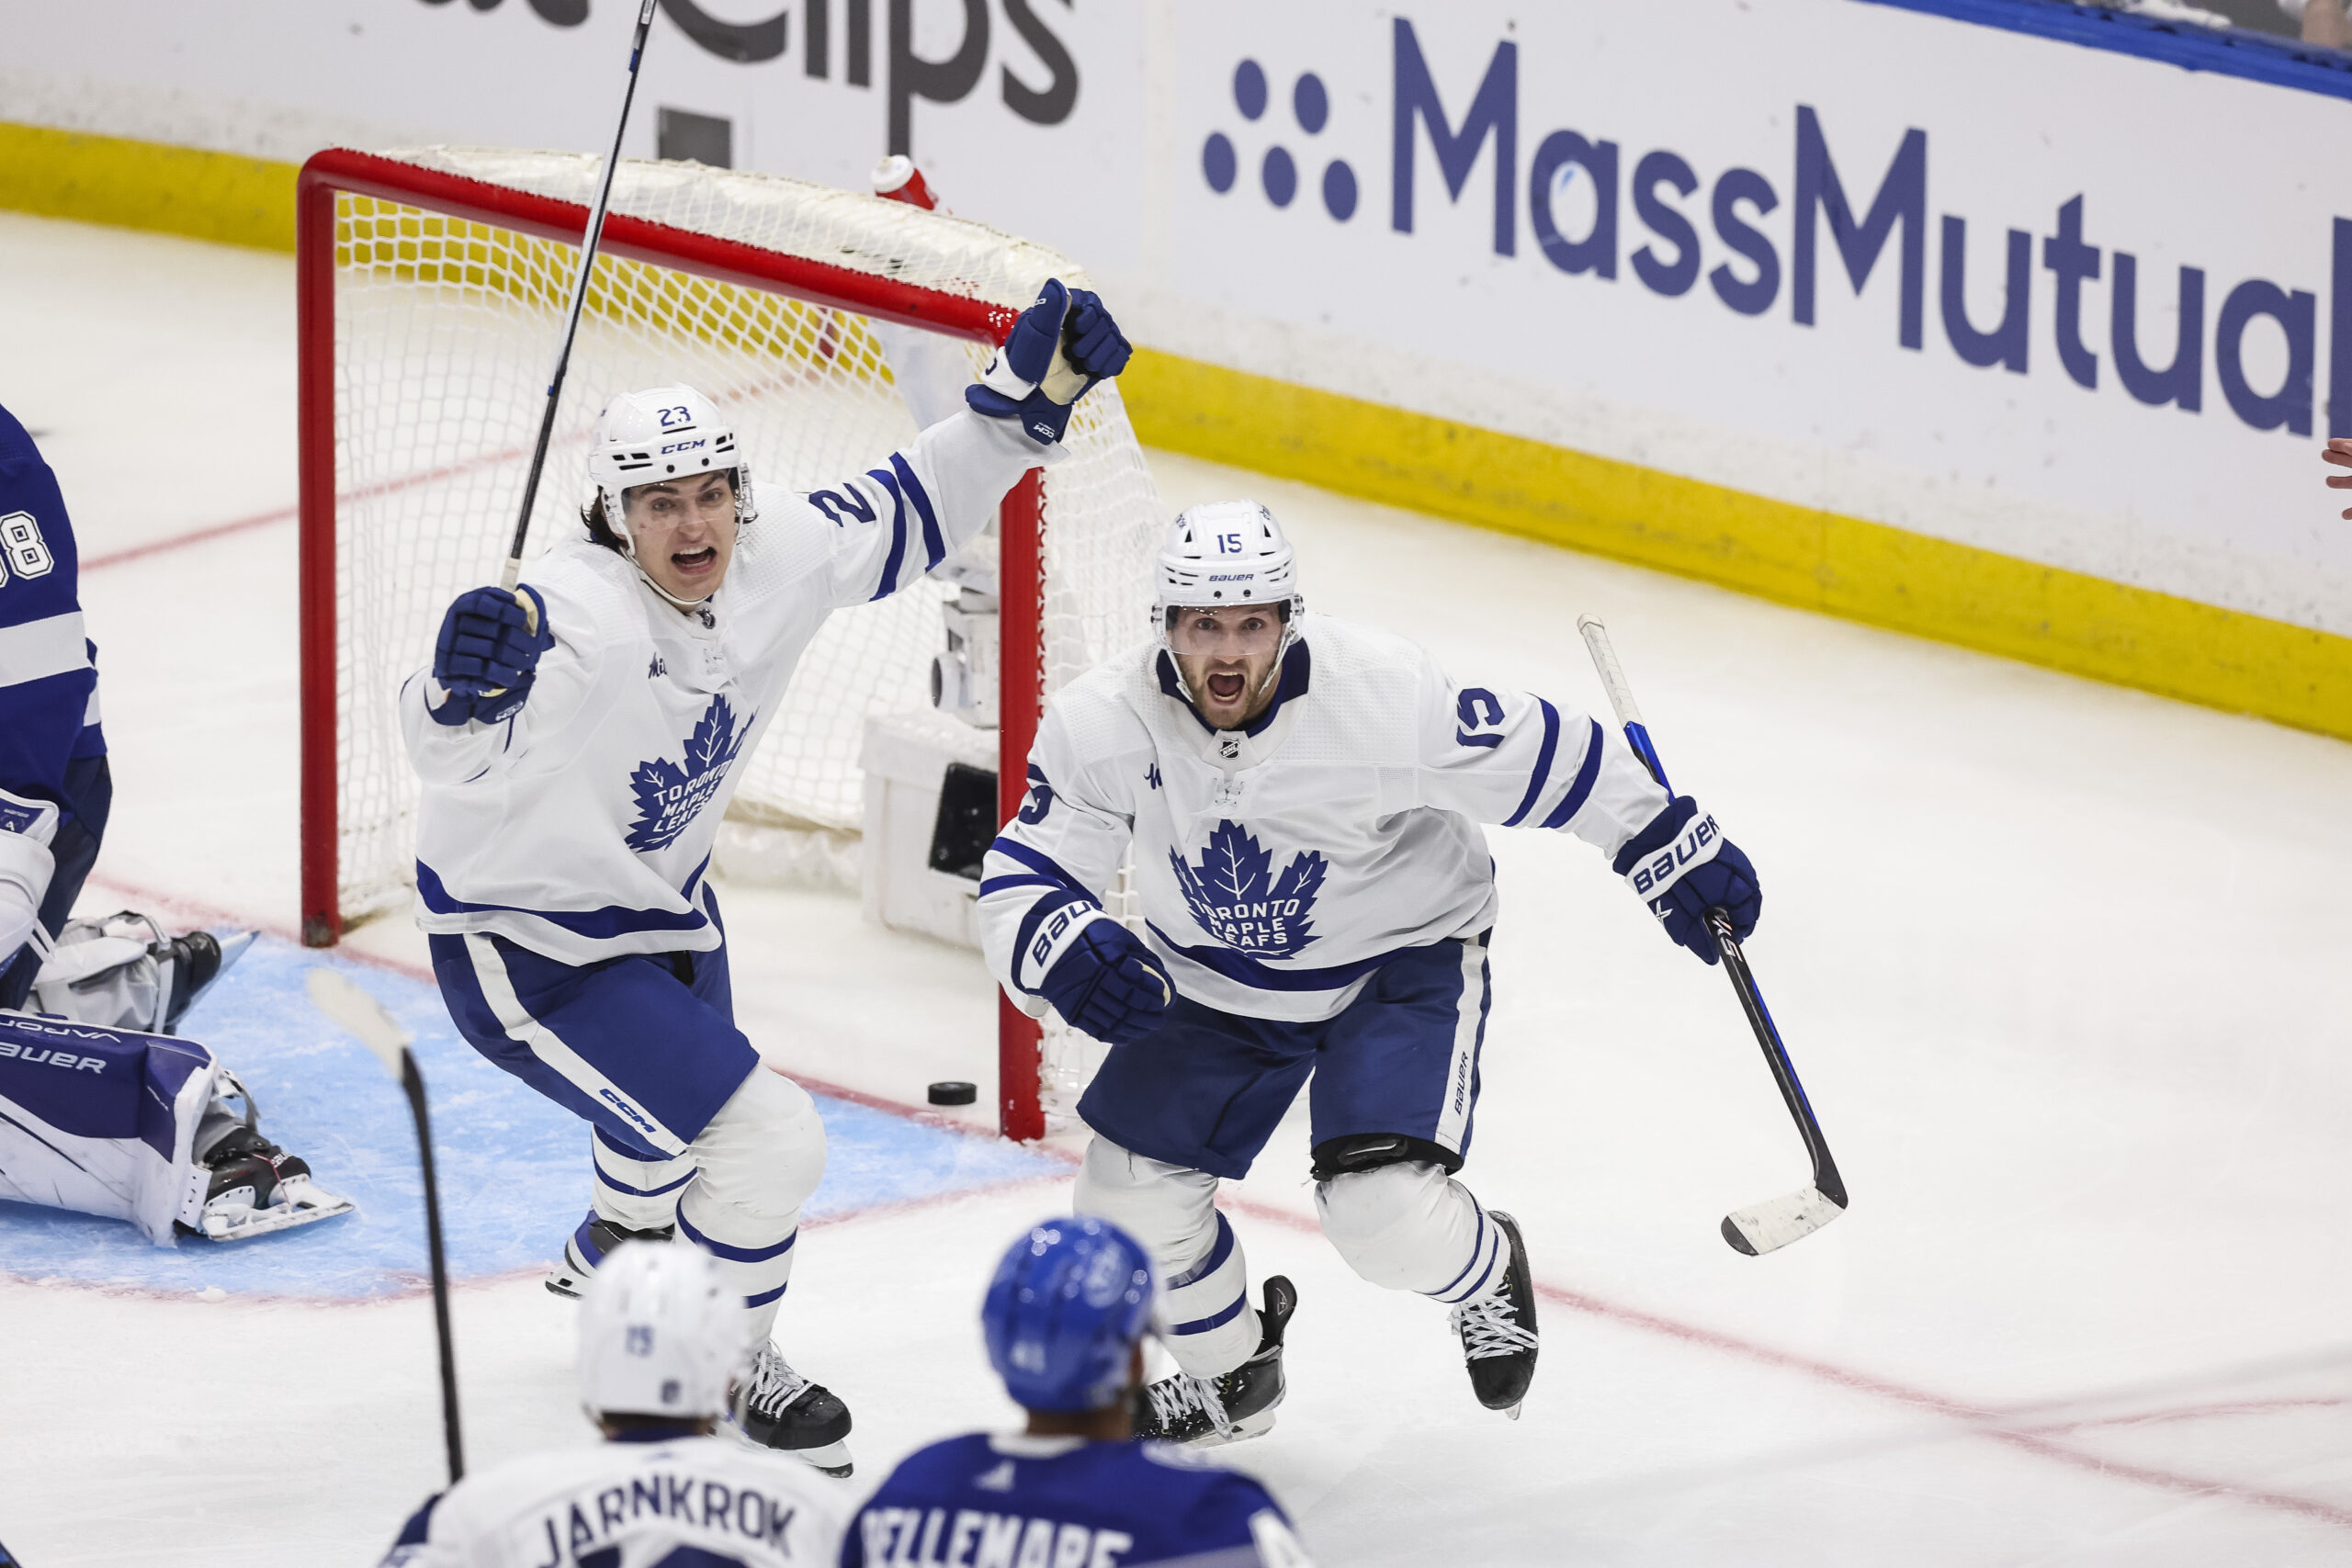 Matthews' hat trick helps Maple Leafs earn comeback win over